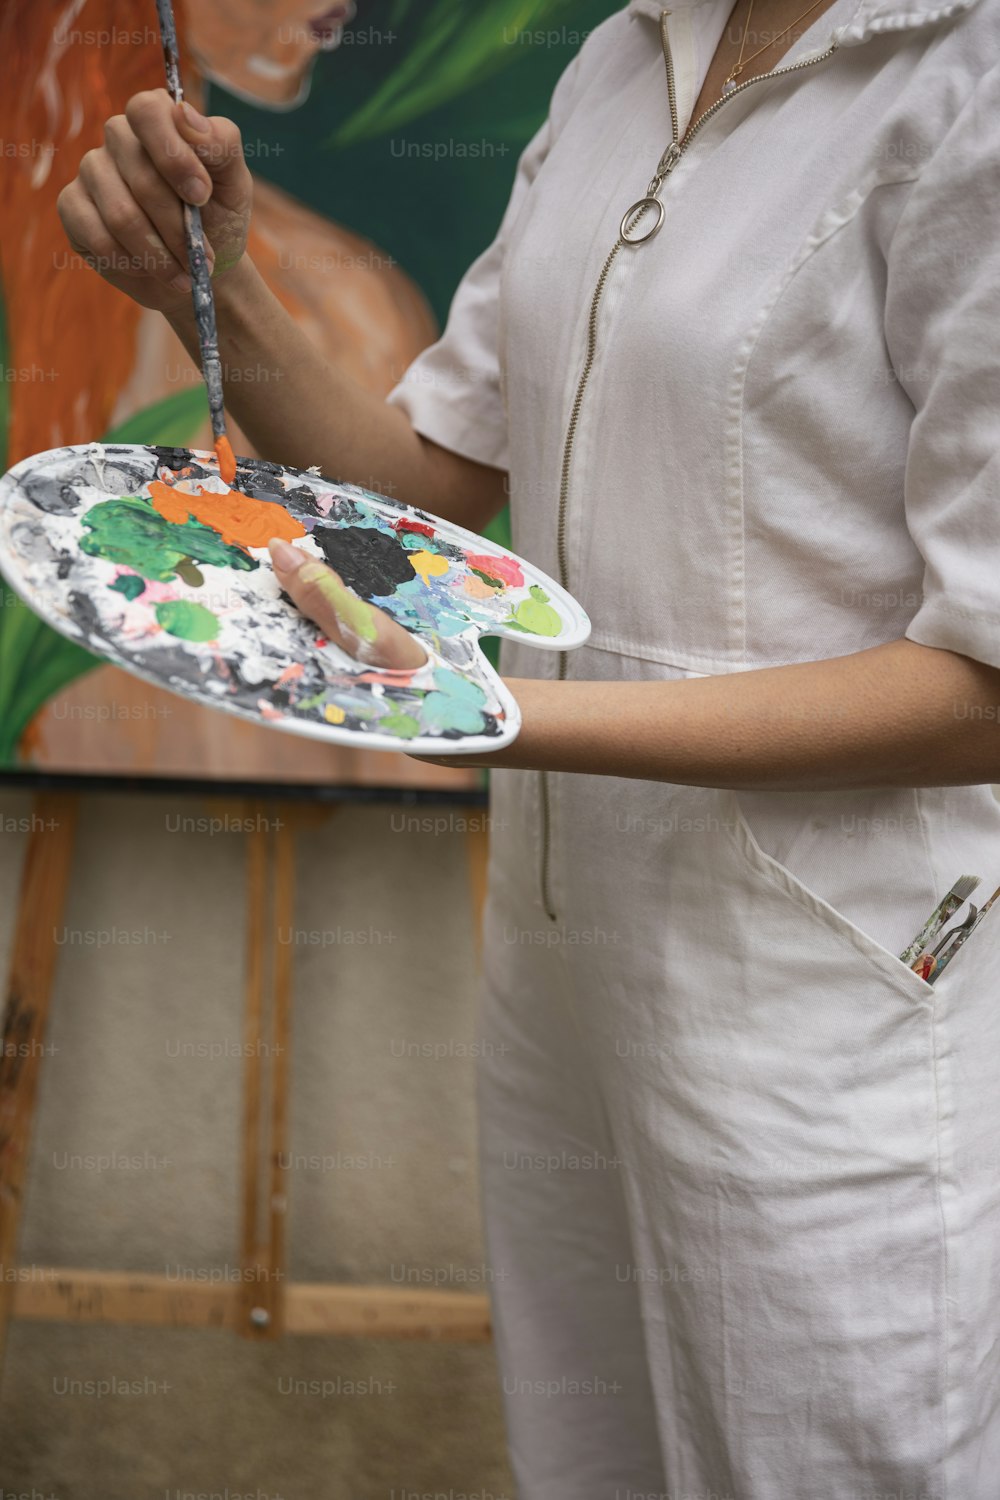 Una mujer sosteniendo un plato con una pintura en él